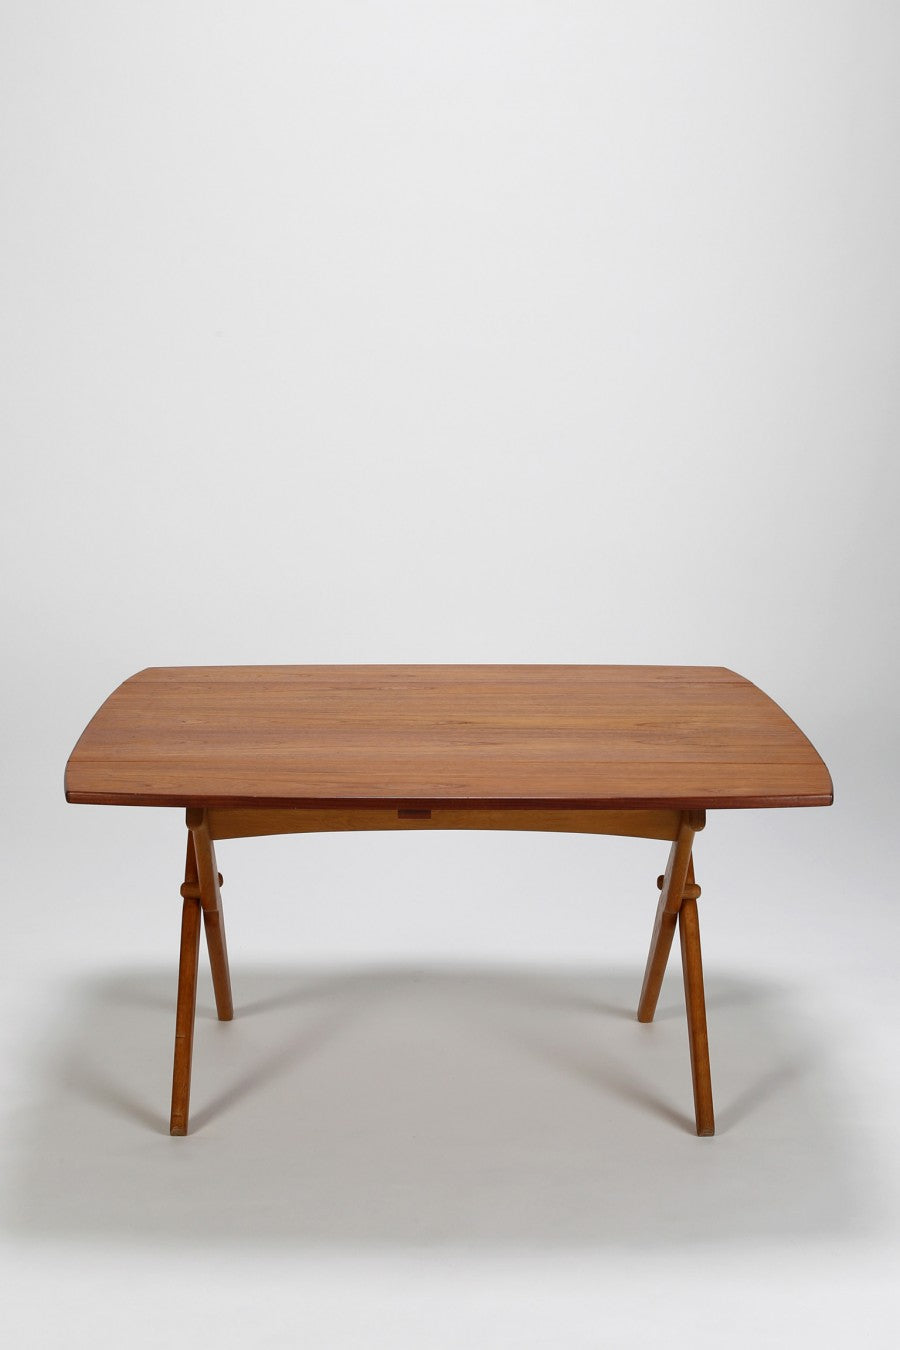 Höhenverstellbarer Dänischer Tisch von Hovmand Olsen